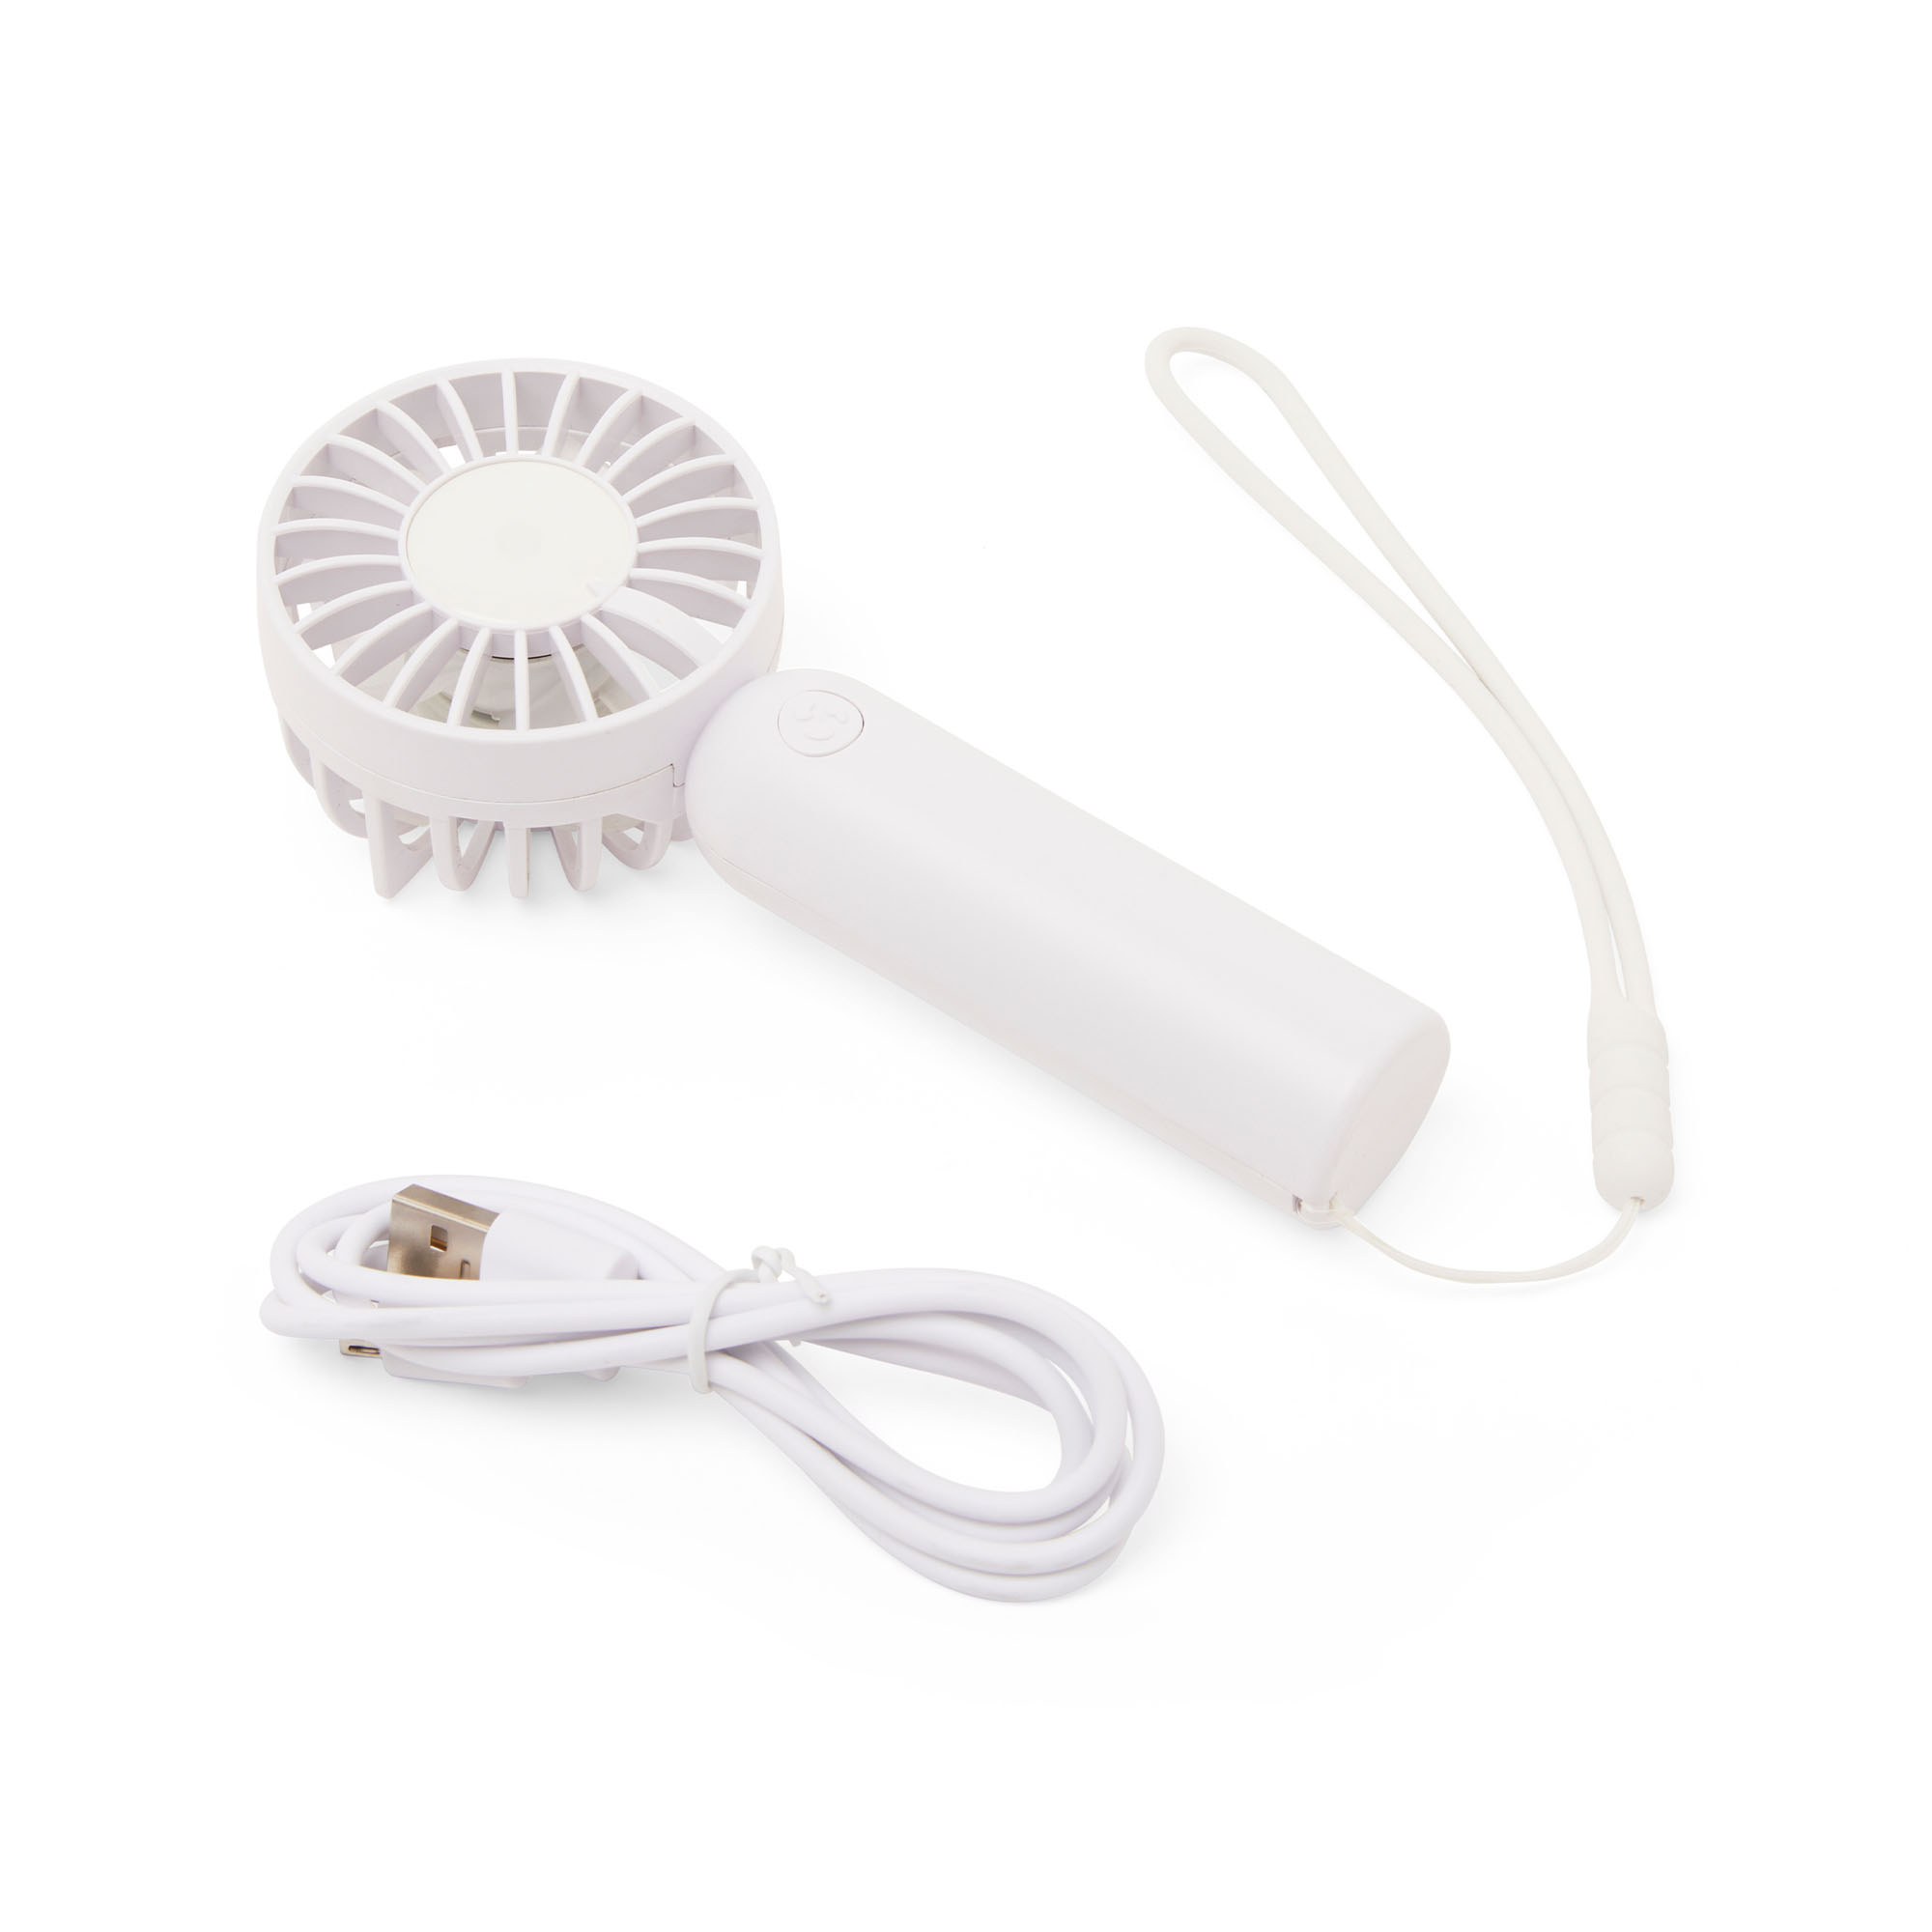 Piccolo ventilatore portatile ricaricabile USB (bianco)